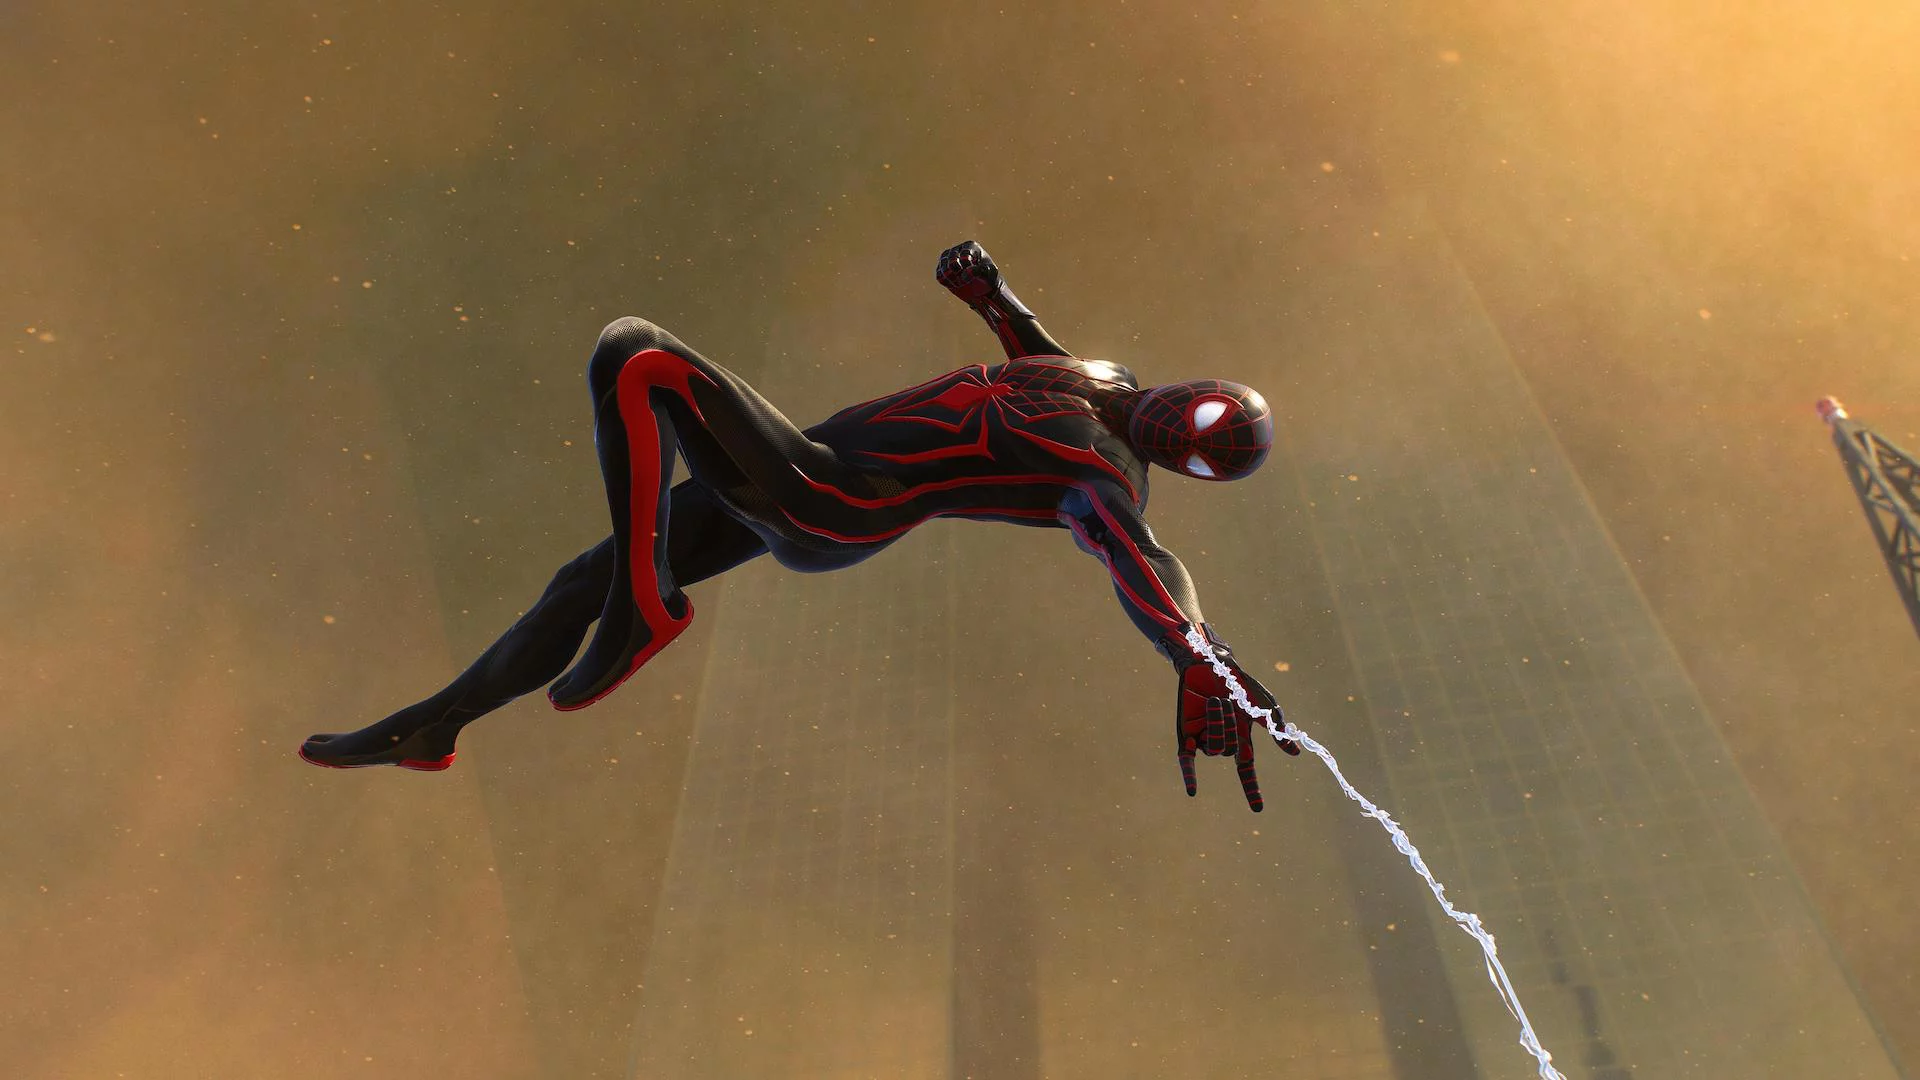 Скриншот из игры Marvel’s Spider-Man 2